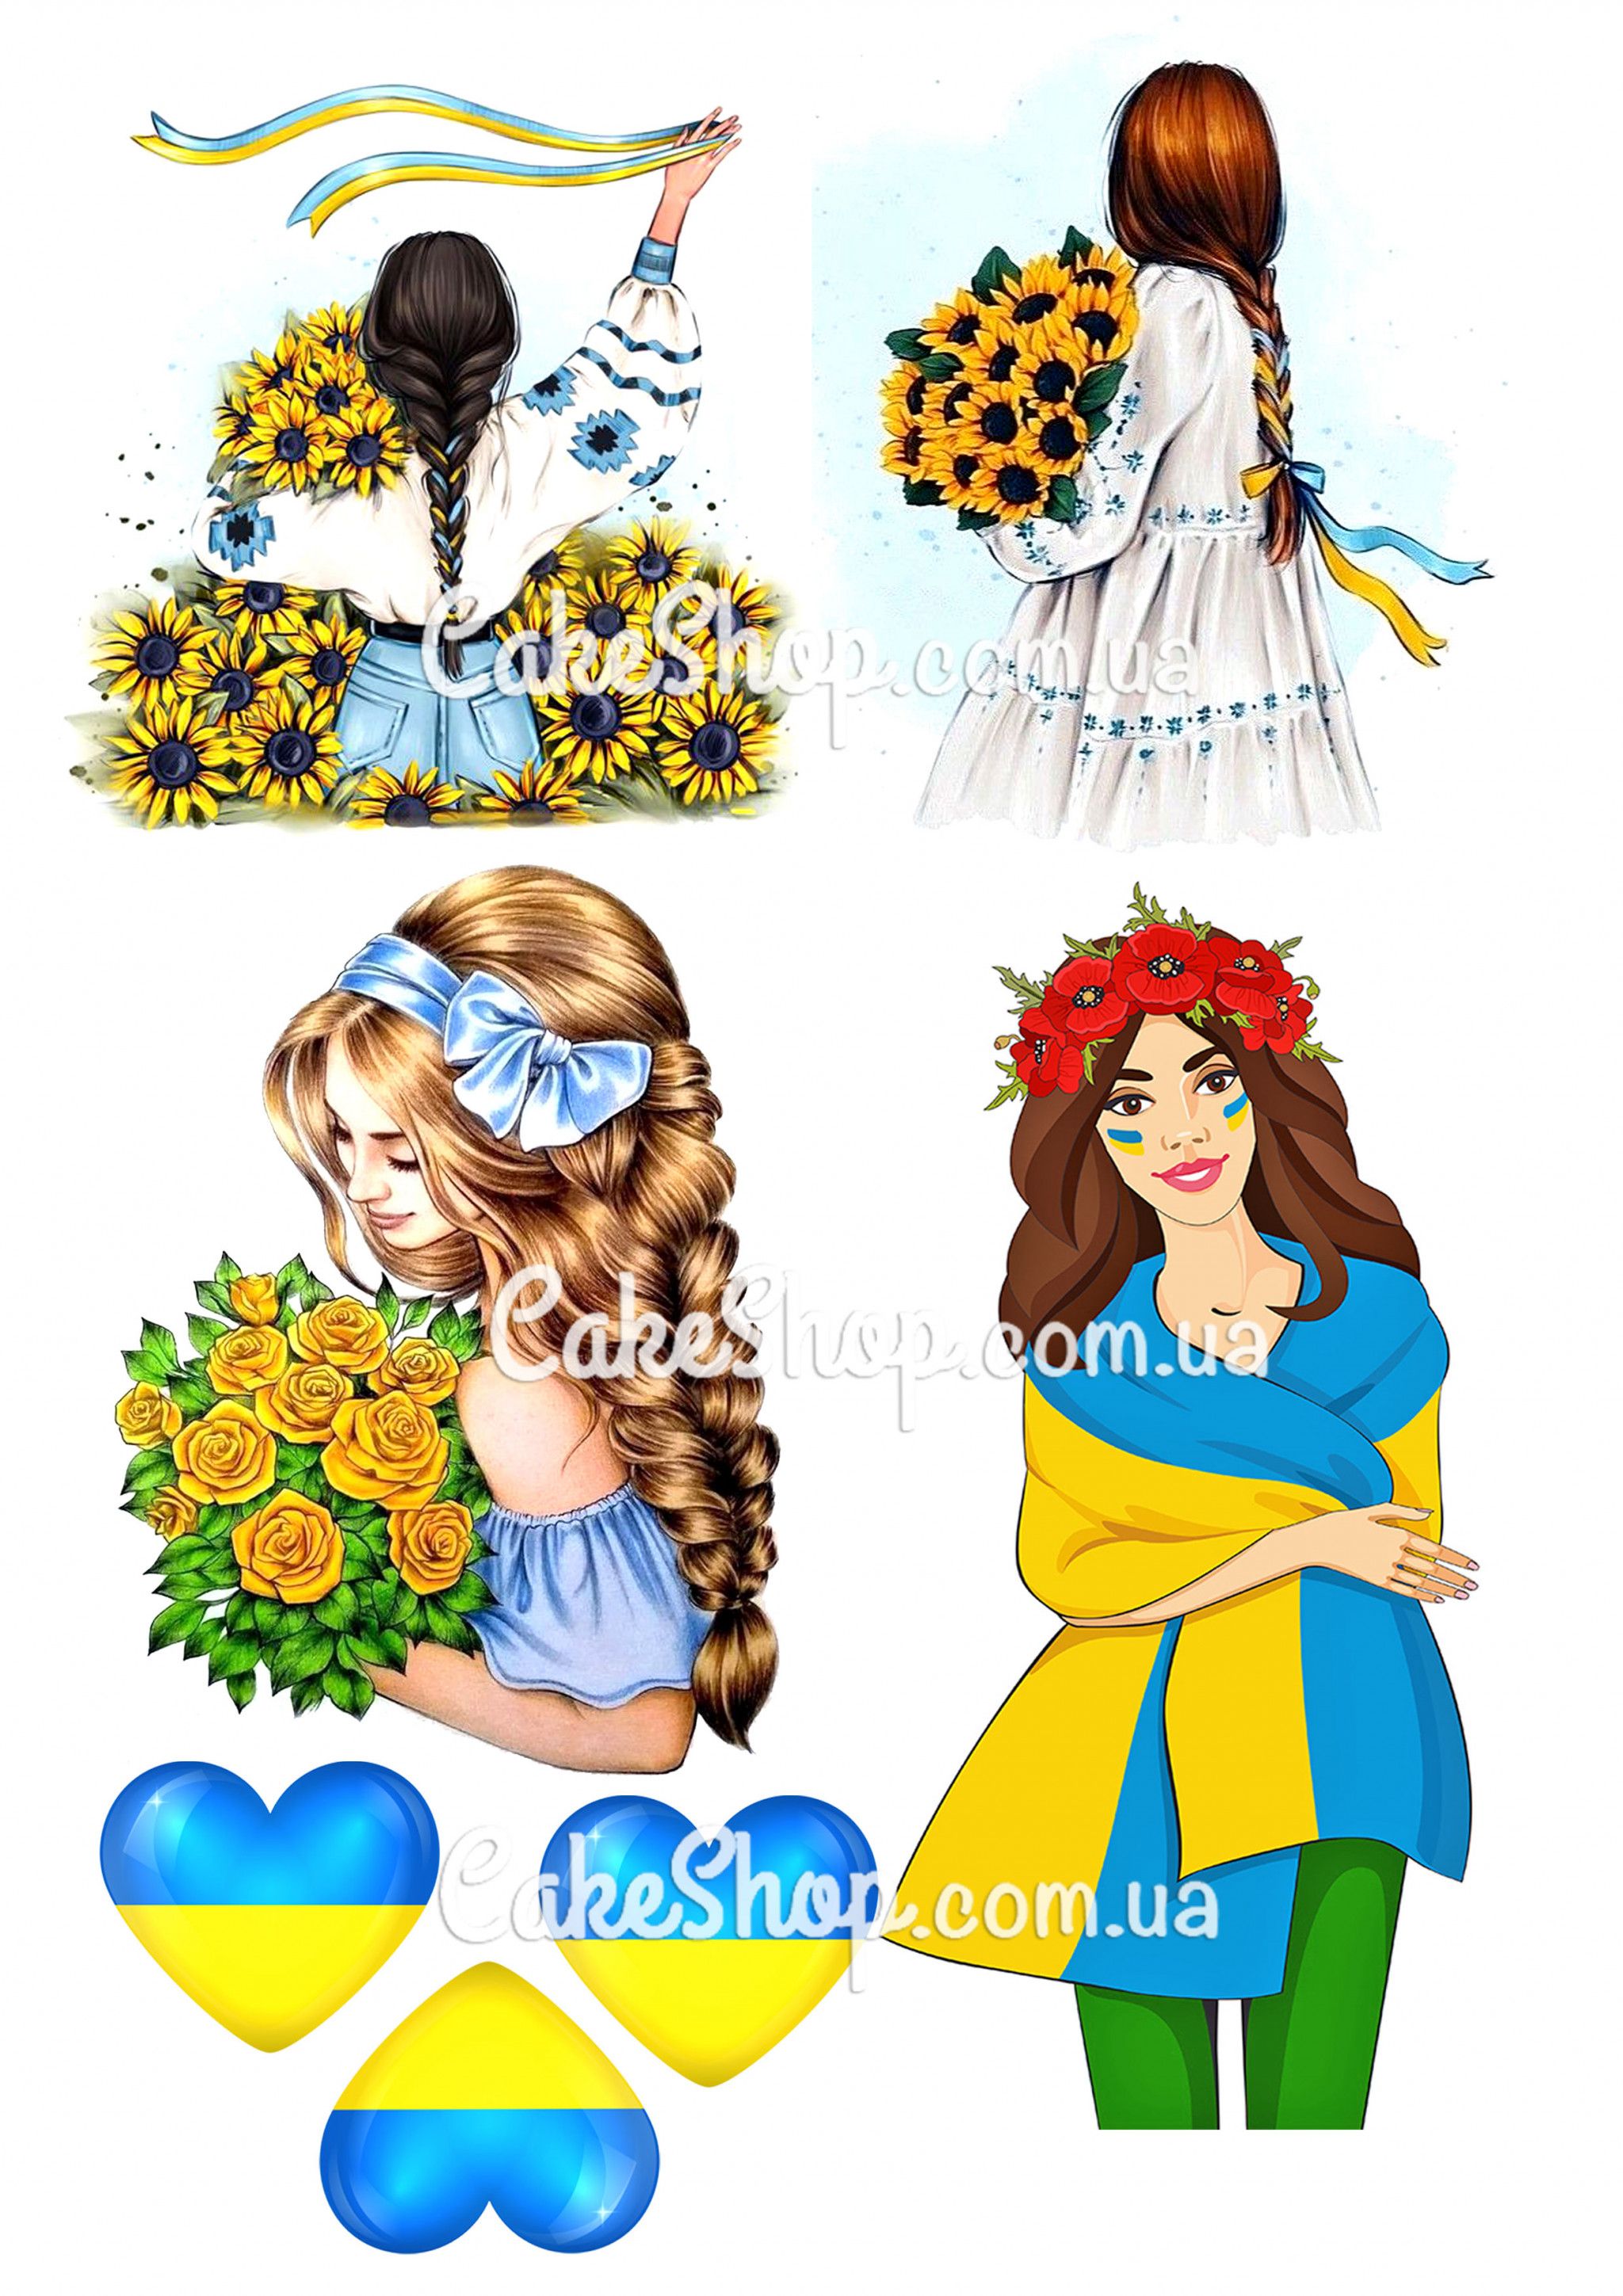 ⋗ Вафельная картинка Рисунок девушки 6 купить в Украине ➛ CakeShop.com.ua, фото